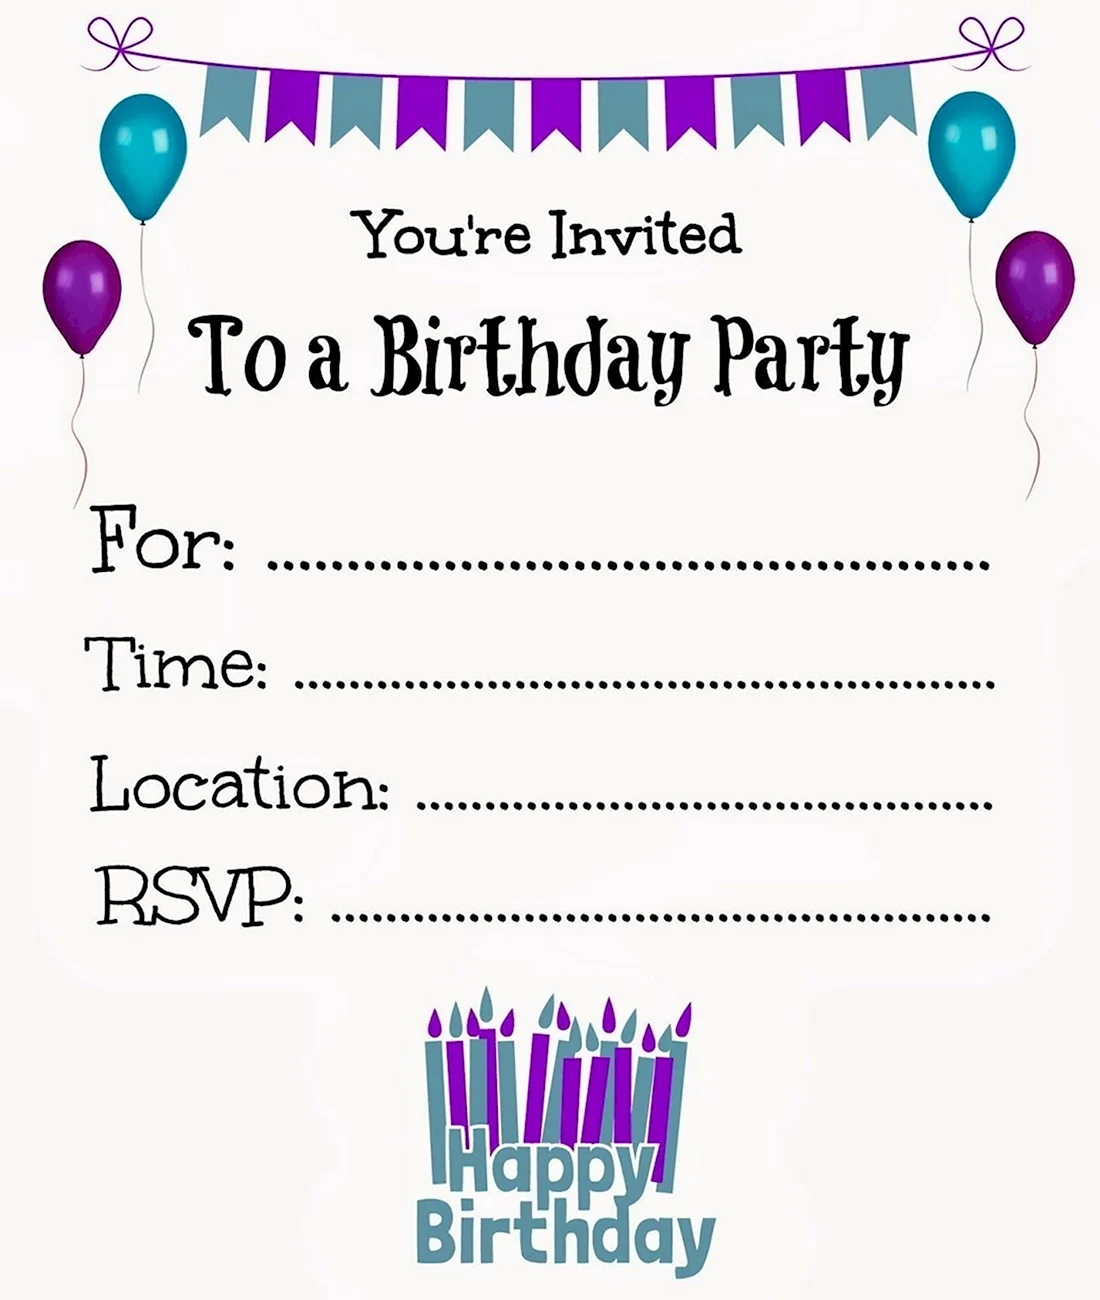 Приглашение на день рождения